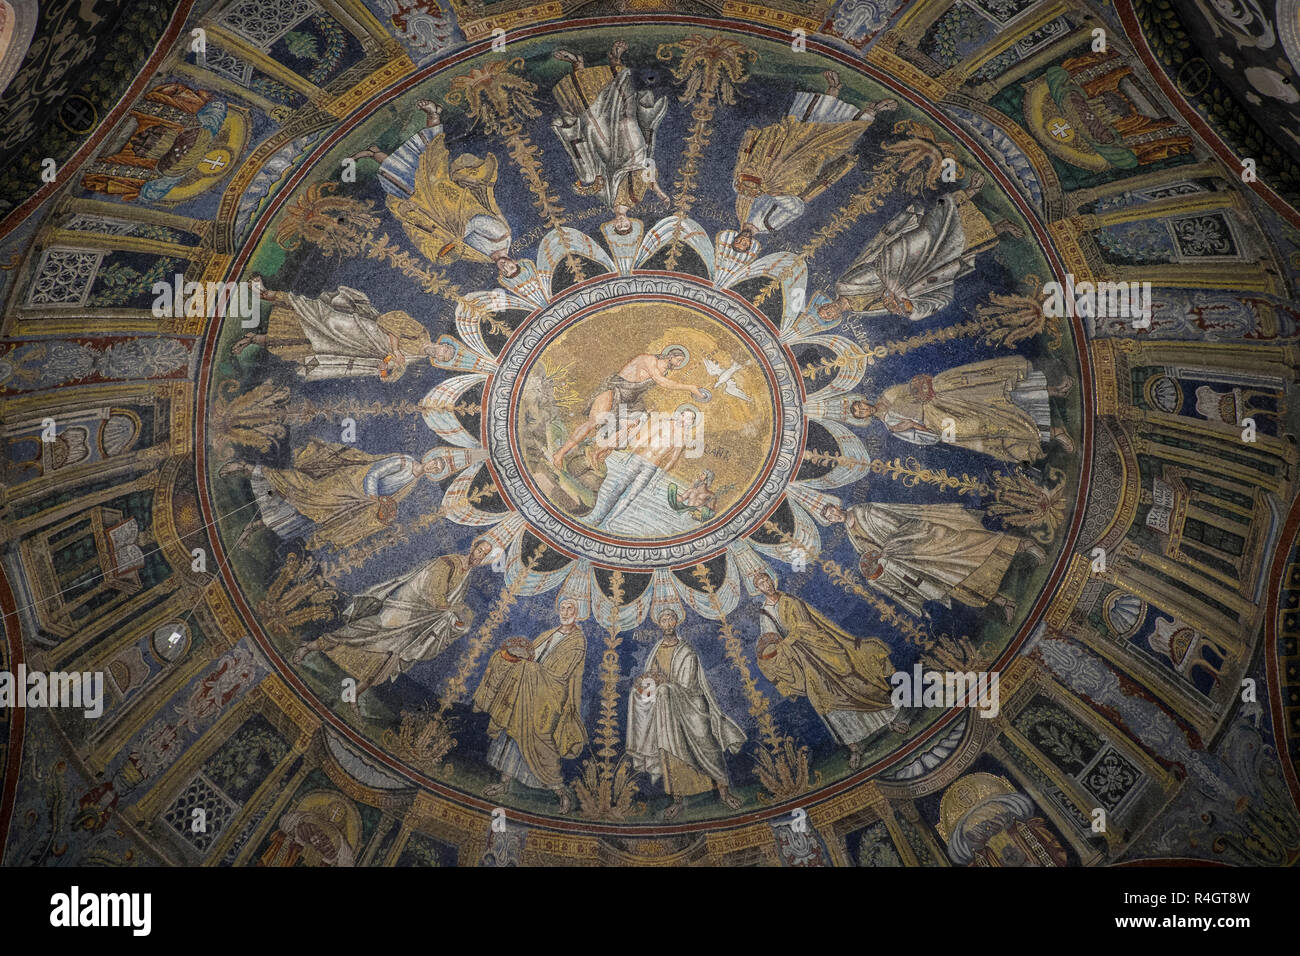 L'Italie, Émilie-Romagne, Ravenna : mosaïques dans la Basilique de Sant'Apollinare Nuovo (Basilique de Saint Apollinaire) Banque D'Images